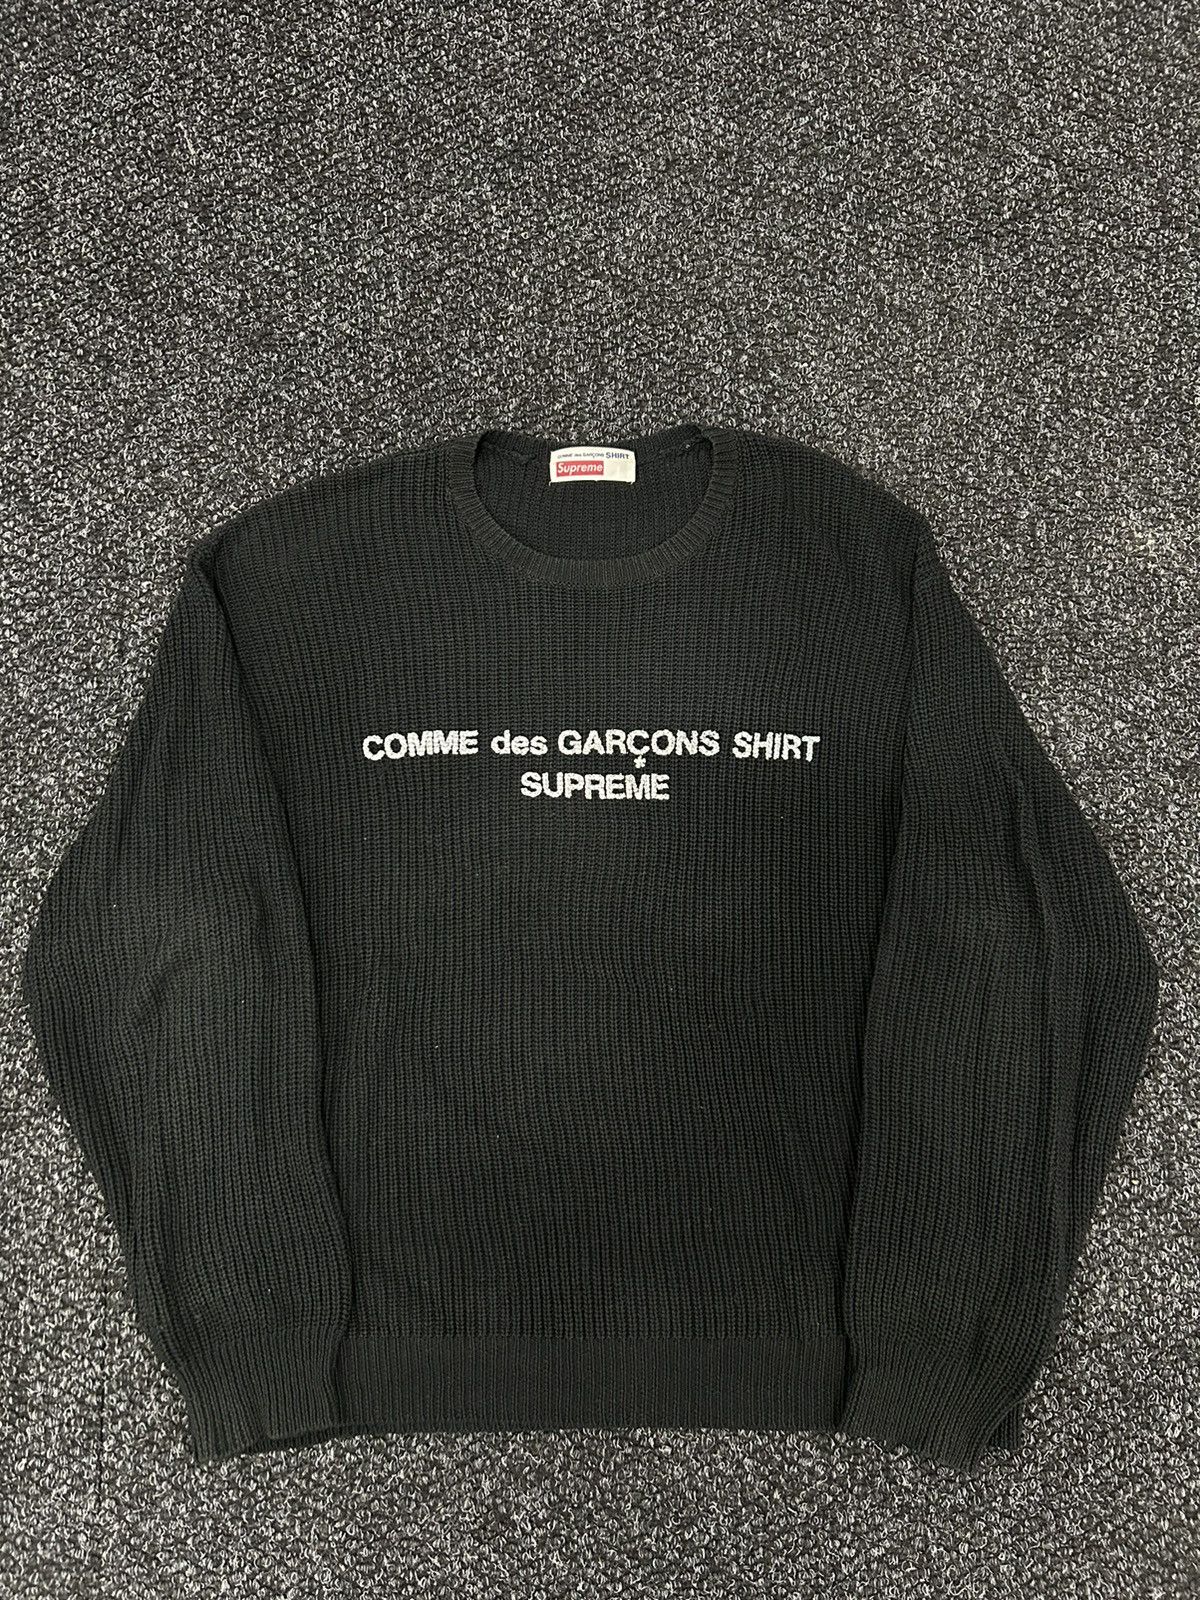 Supreme Shit Sweater | Grailed